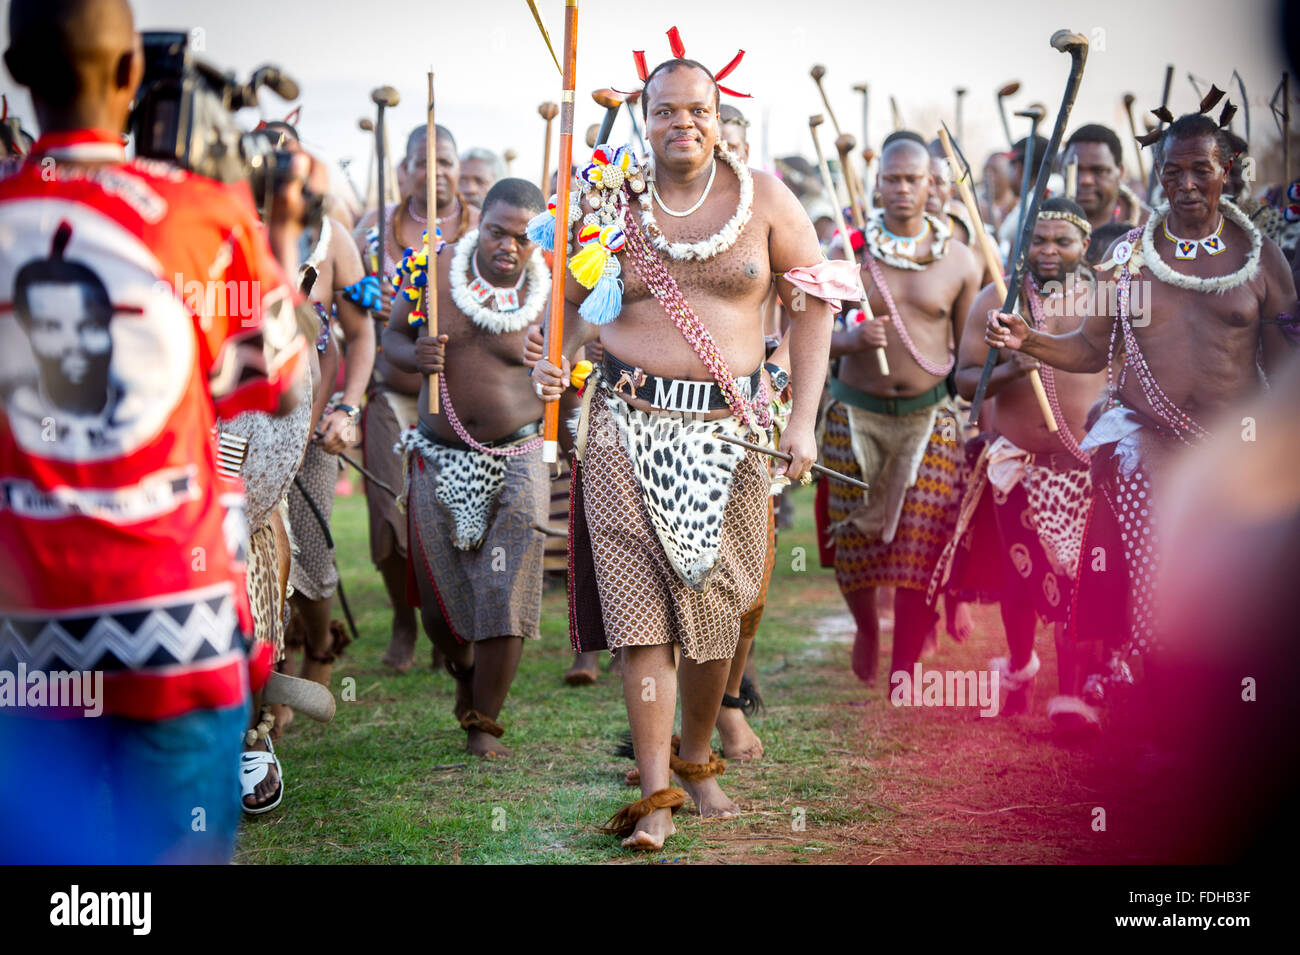 Ludzidzini, Swasiland, Afrika - König Mswati III von Swasiland bei der jährlichen Umhlanga oder Reed dance Zeremonie. Mswati III ich Stockfoto